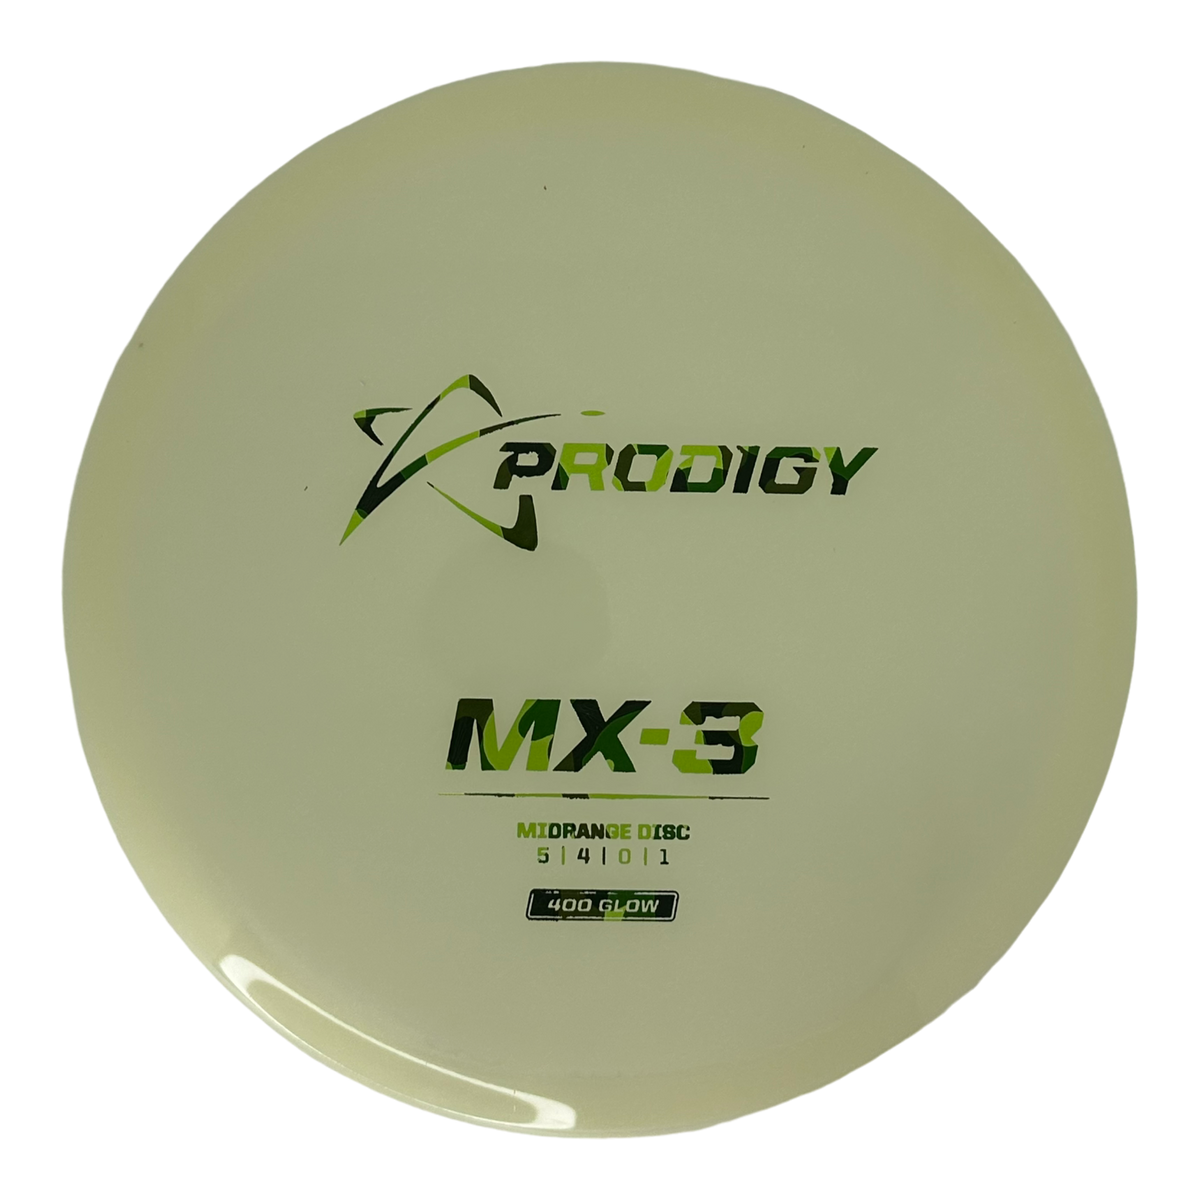 Prodigy 400 Glow MX-3